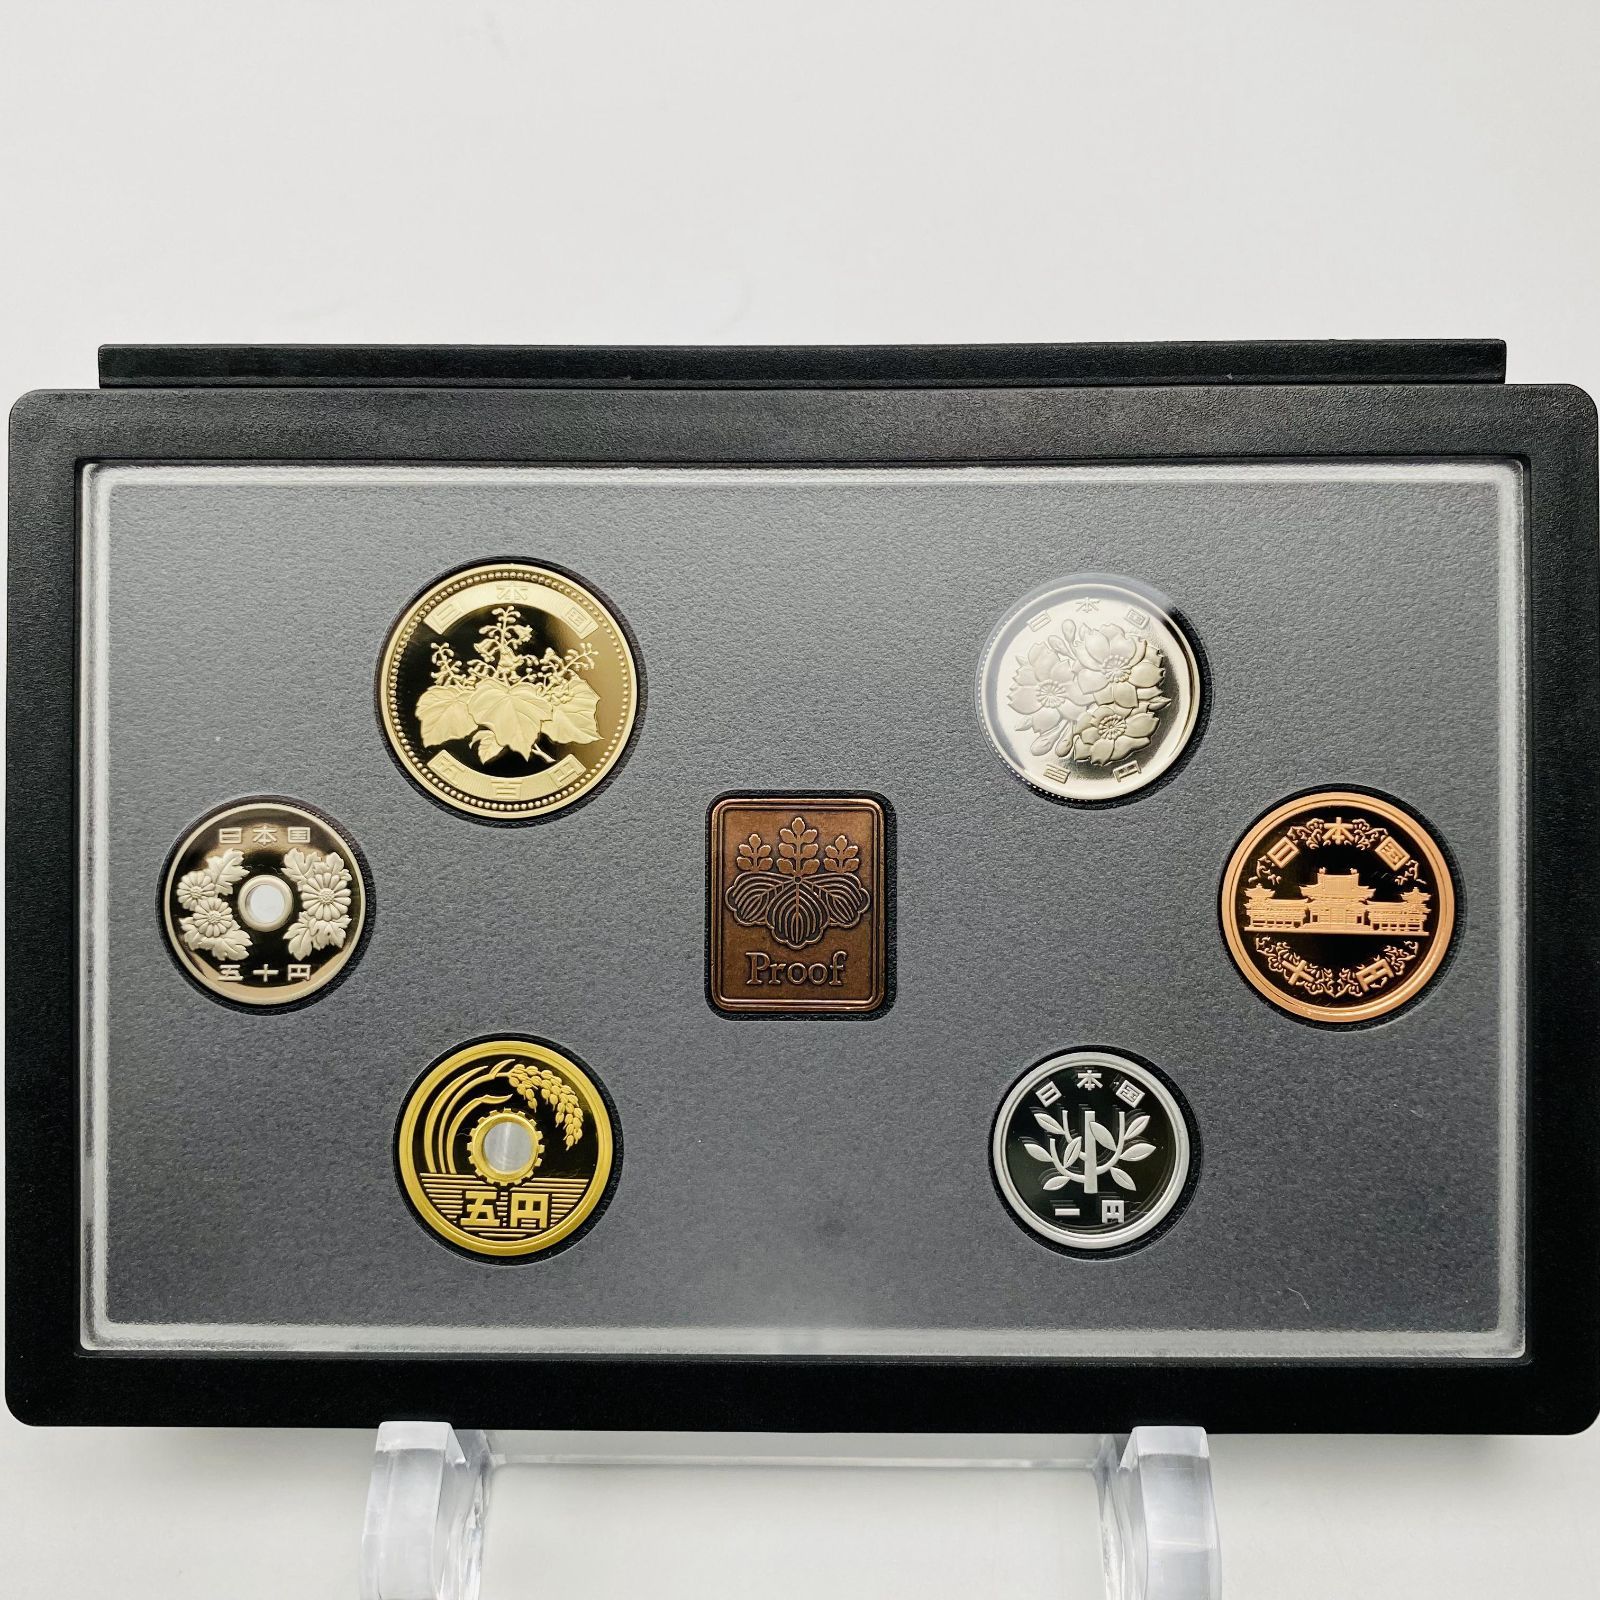 プルーフ貨幣セット 2013年 平成25年 額面666円 年銘板有 全揃い 通常